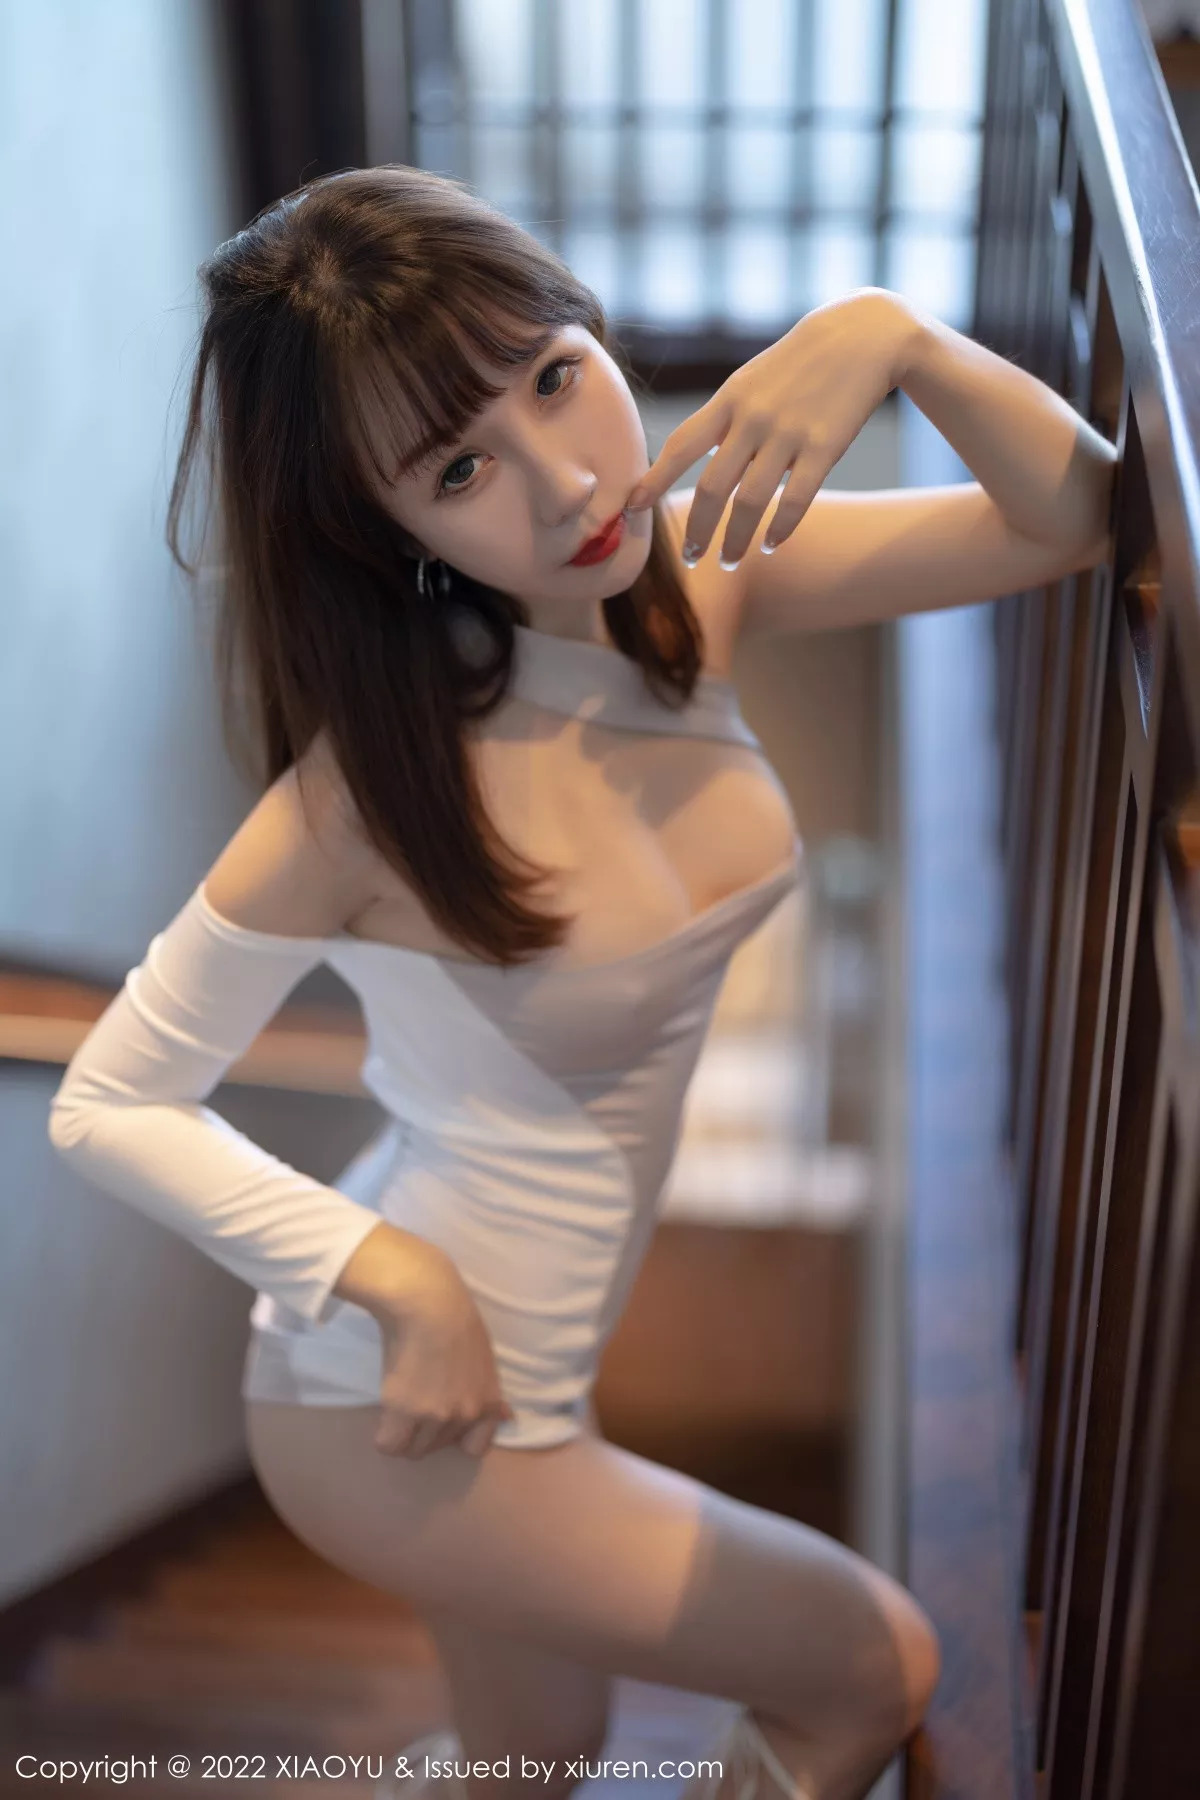 [XiaoYu画语界]Vol.900_模特波巧酱浅紫色露肩连衣短裙配白色高跟秀曼妙身姿迷人写真81P